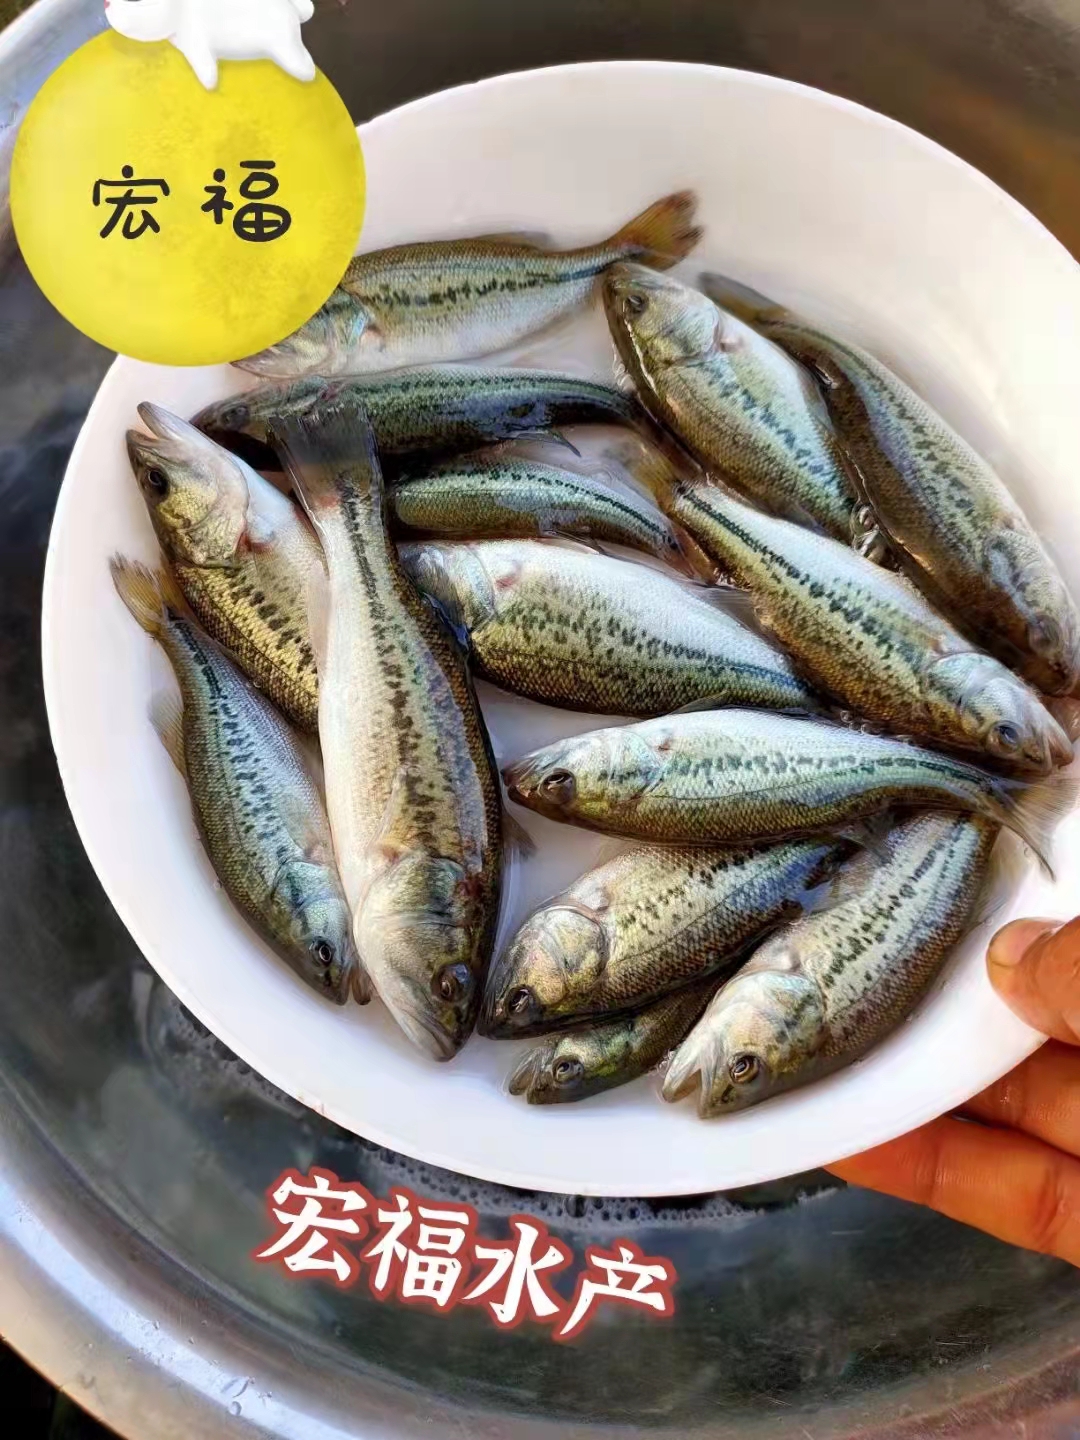 四肋魚養殖 廣州室內養殖鱸魚技術